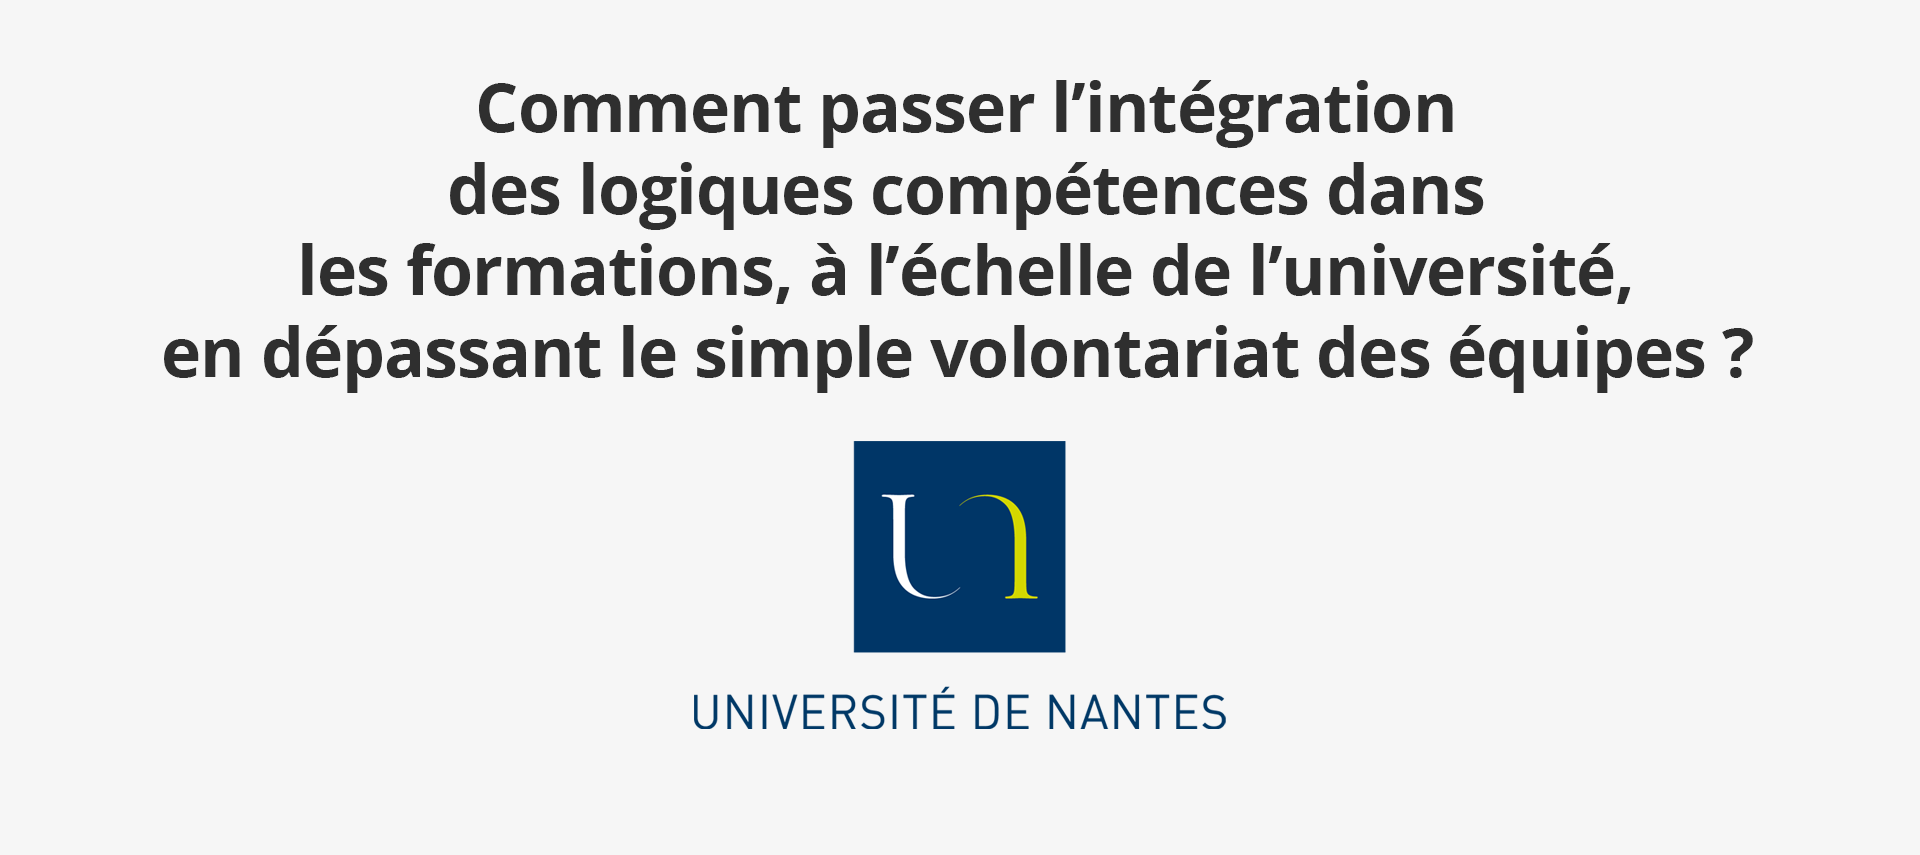 Comment passer l'intégration des logiques compétences dans les formations, à l'échelle de l'université, en dépassant le simple volontariat des équipes ? Par l'Université de Nantes